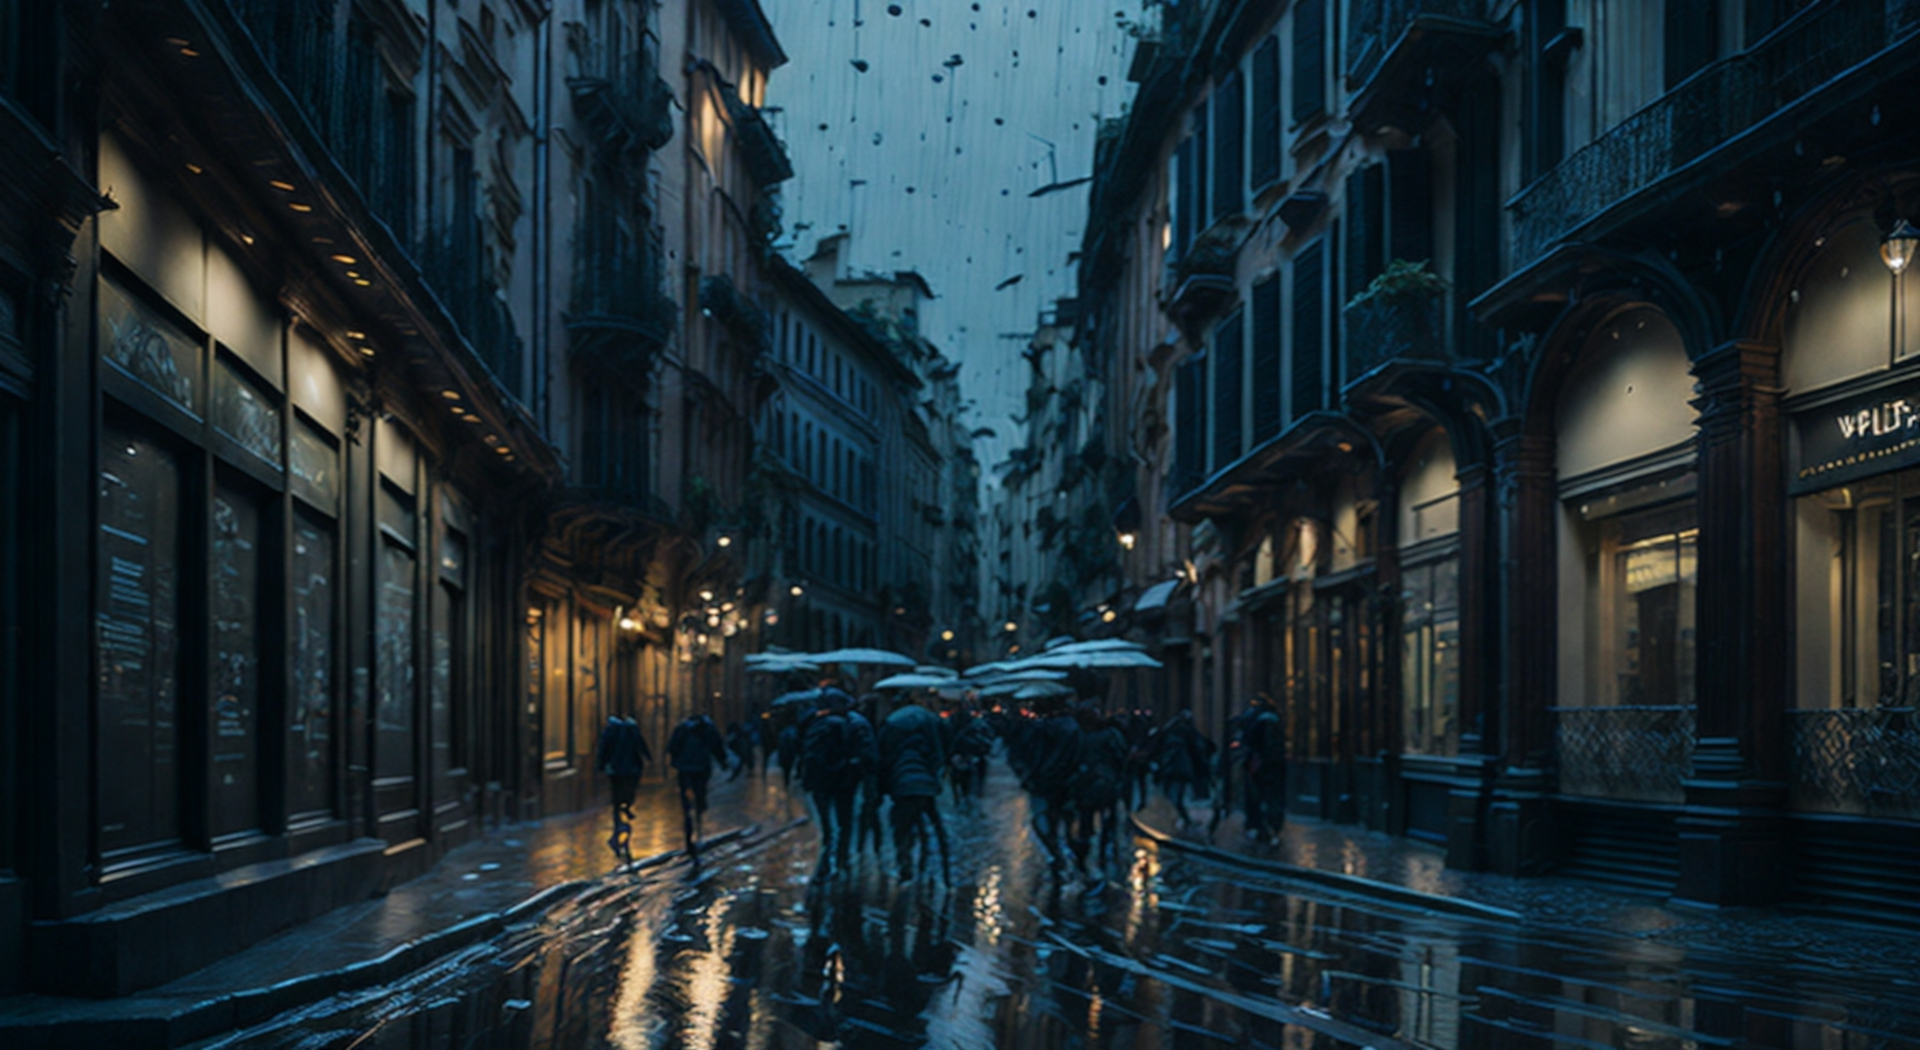 Viaggio nella Poesia: Milano sotto la pioggia